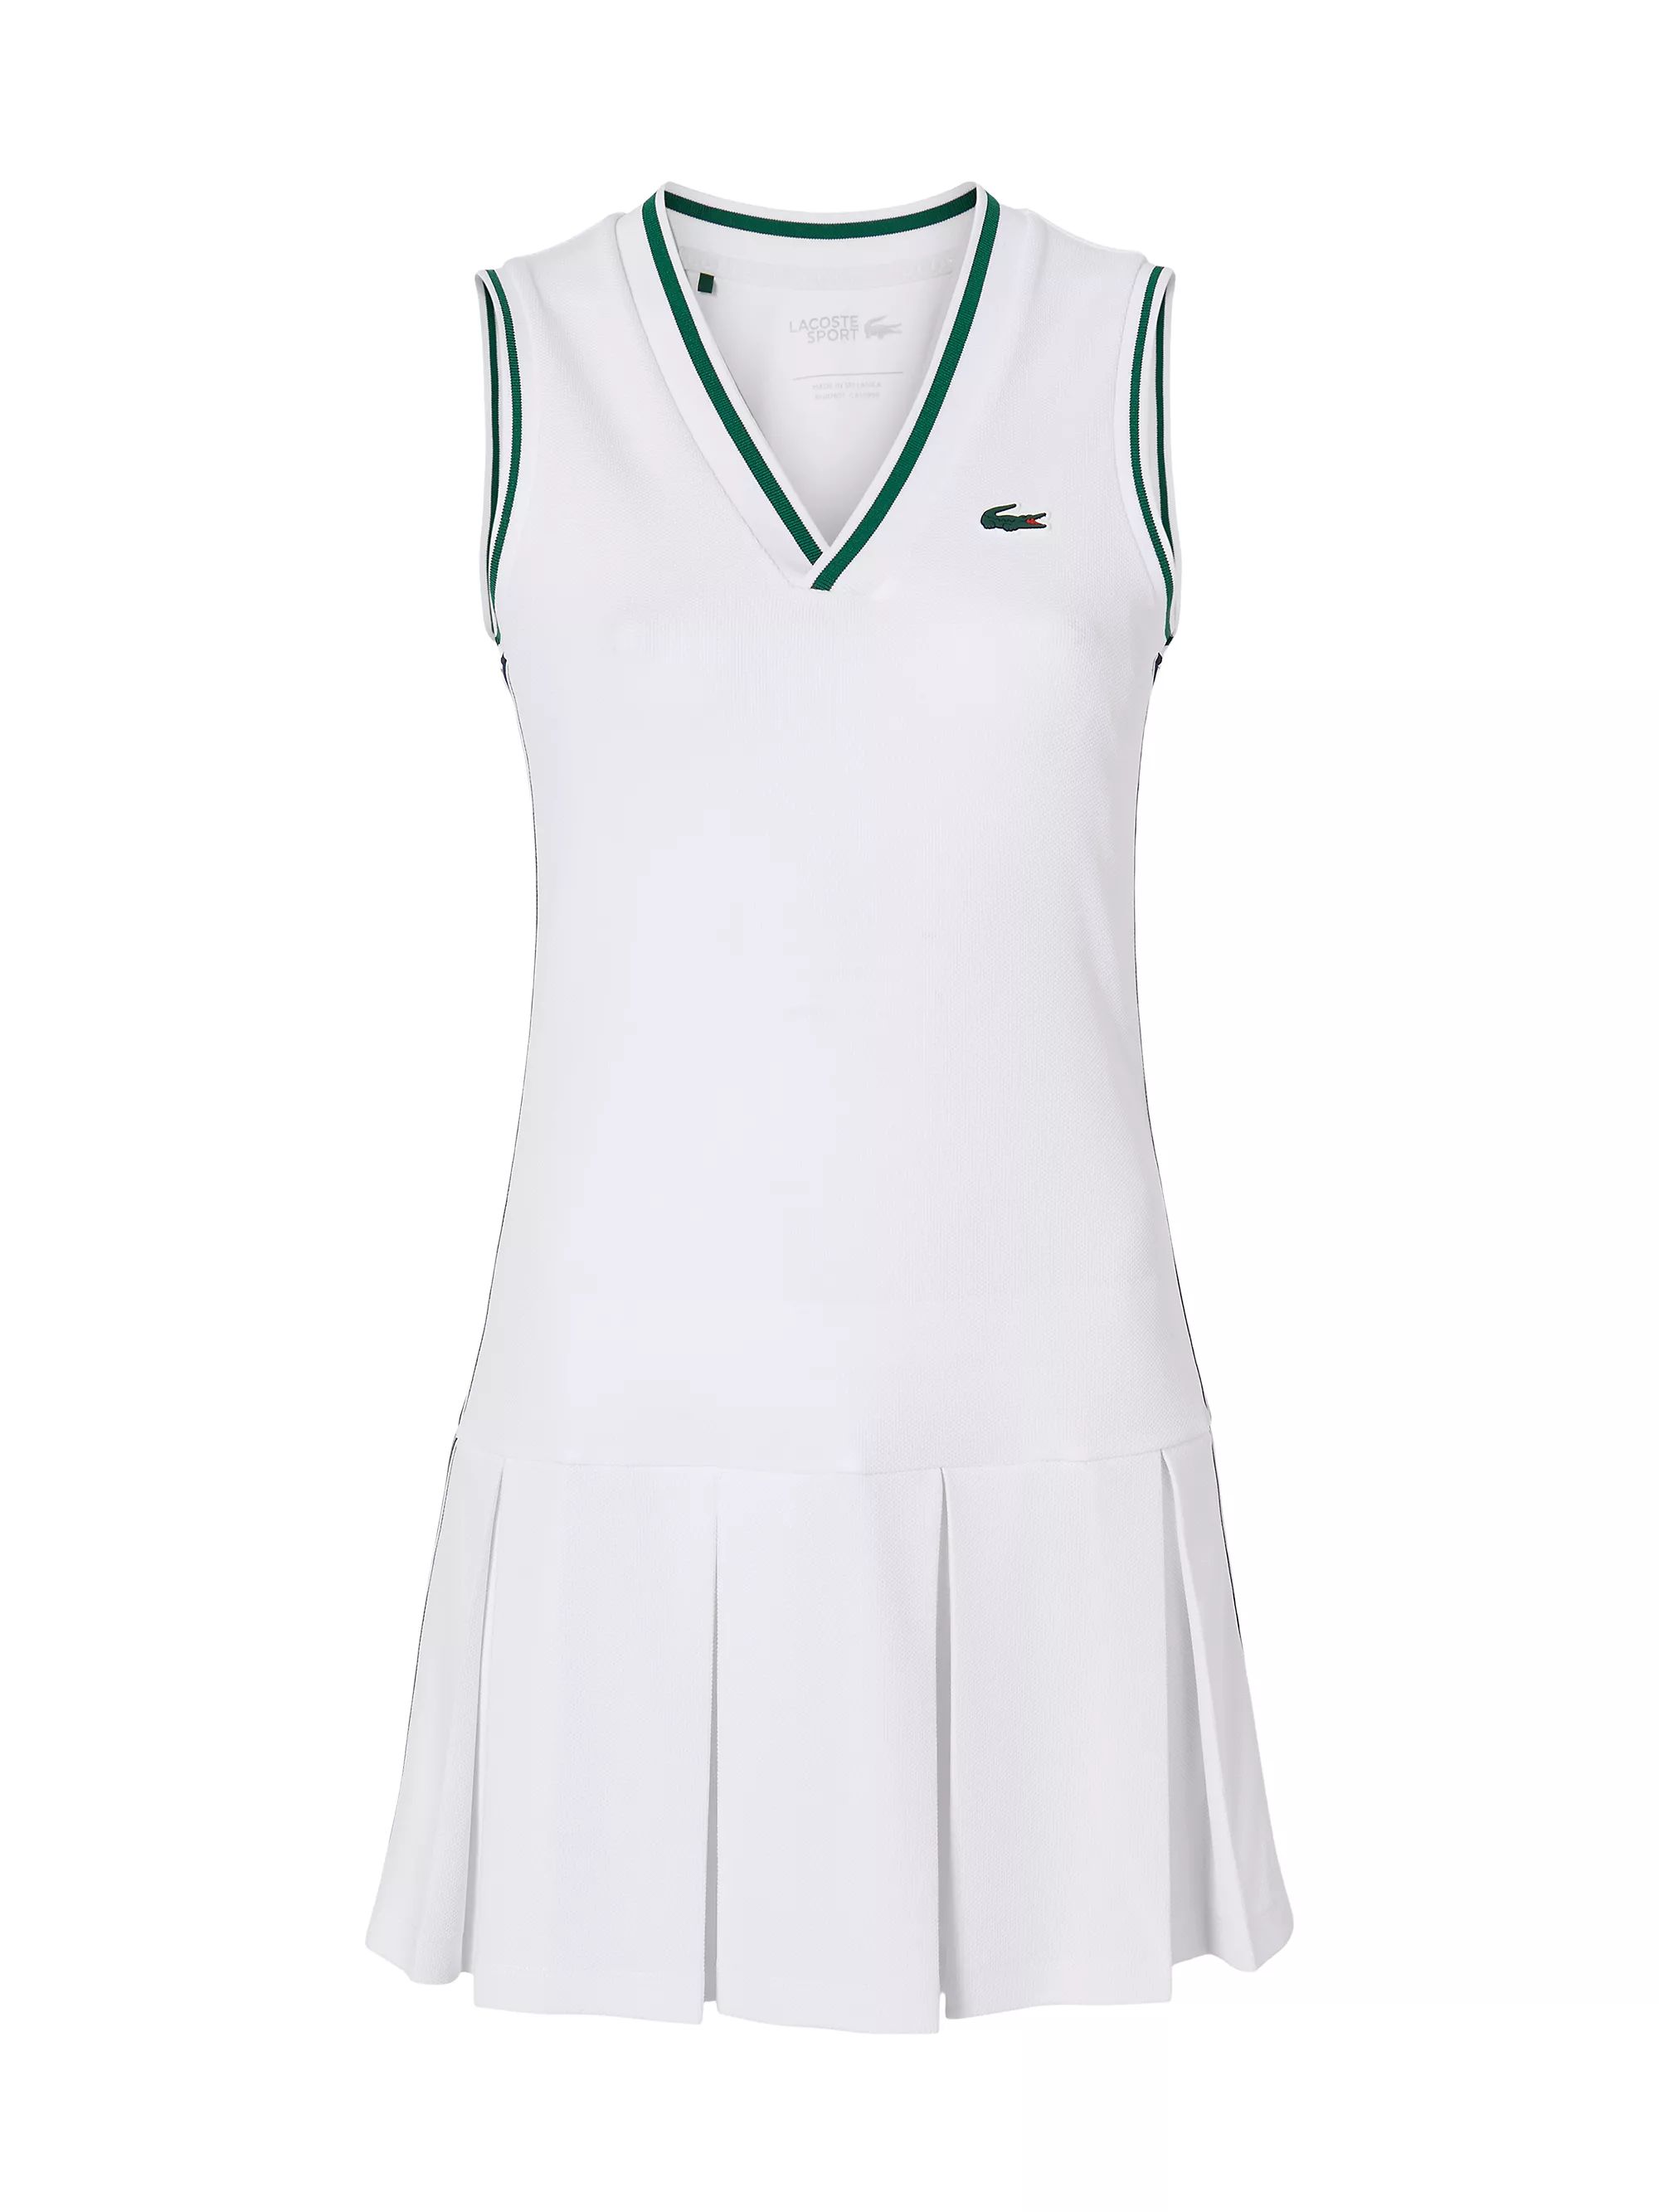 Lacoste x Bandier Performance Piqué Tennis Dress | Saks Fifth Avenue